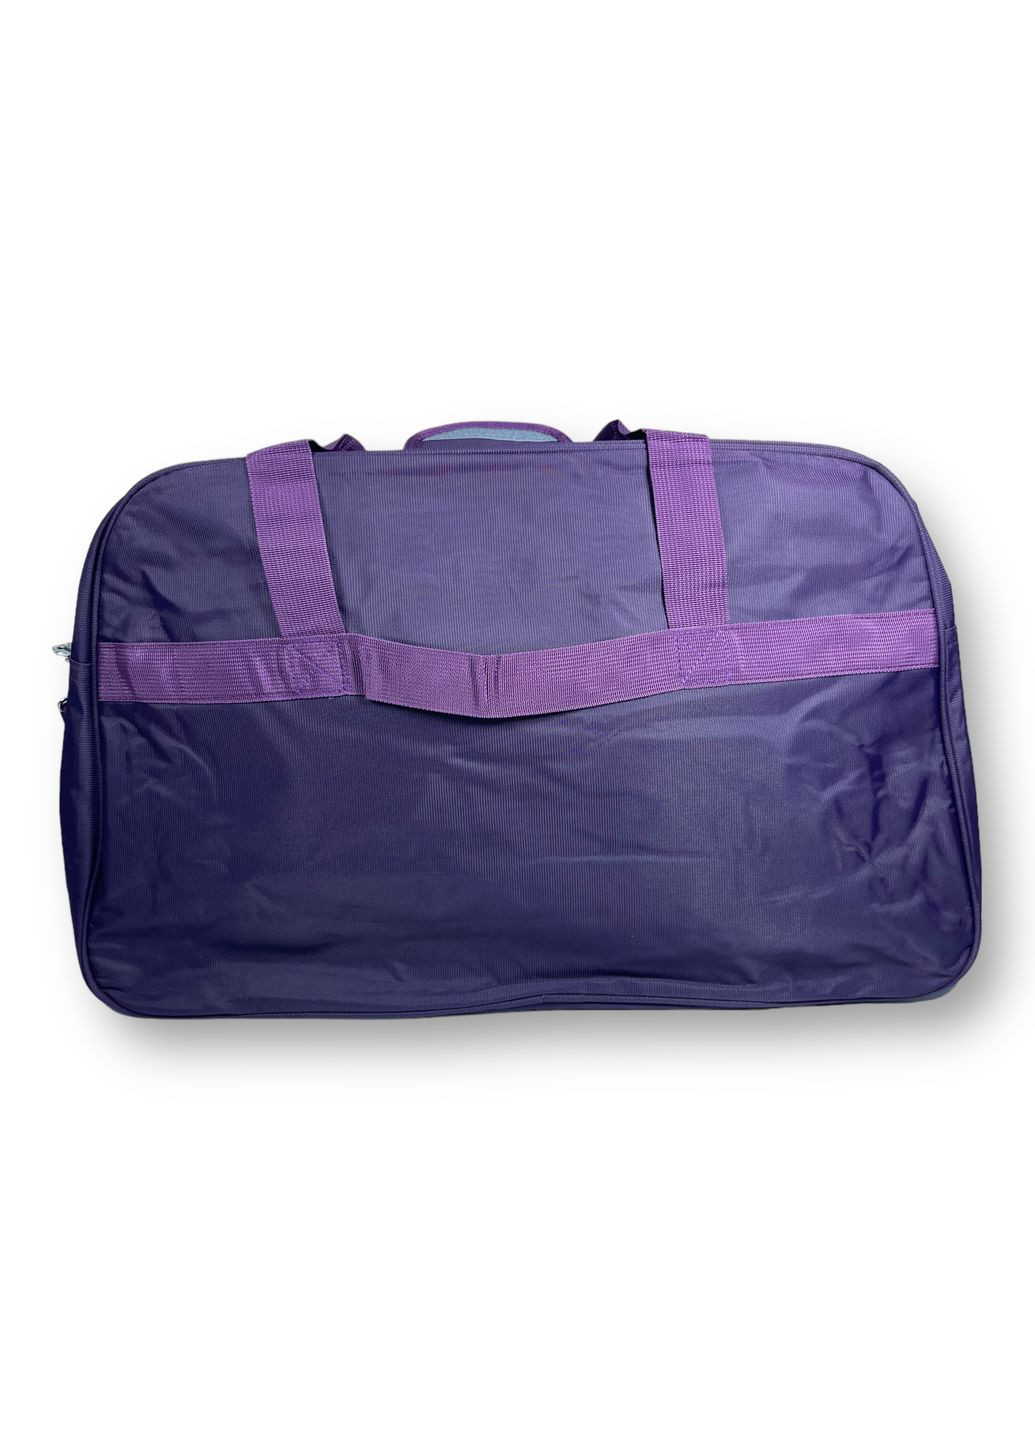 Дорожня сумка, 40 л,, 1 відділення, дві додаткових кишені, регульований з"ємний ремінь, розміри: 58*36*20 см, фіолетова Sports (268995069)